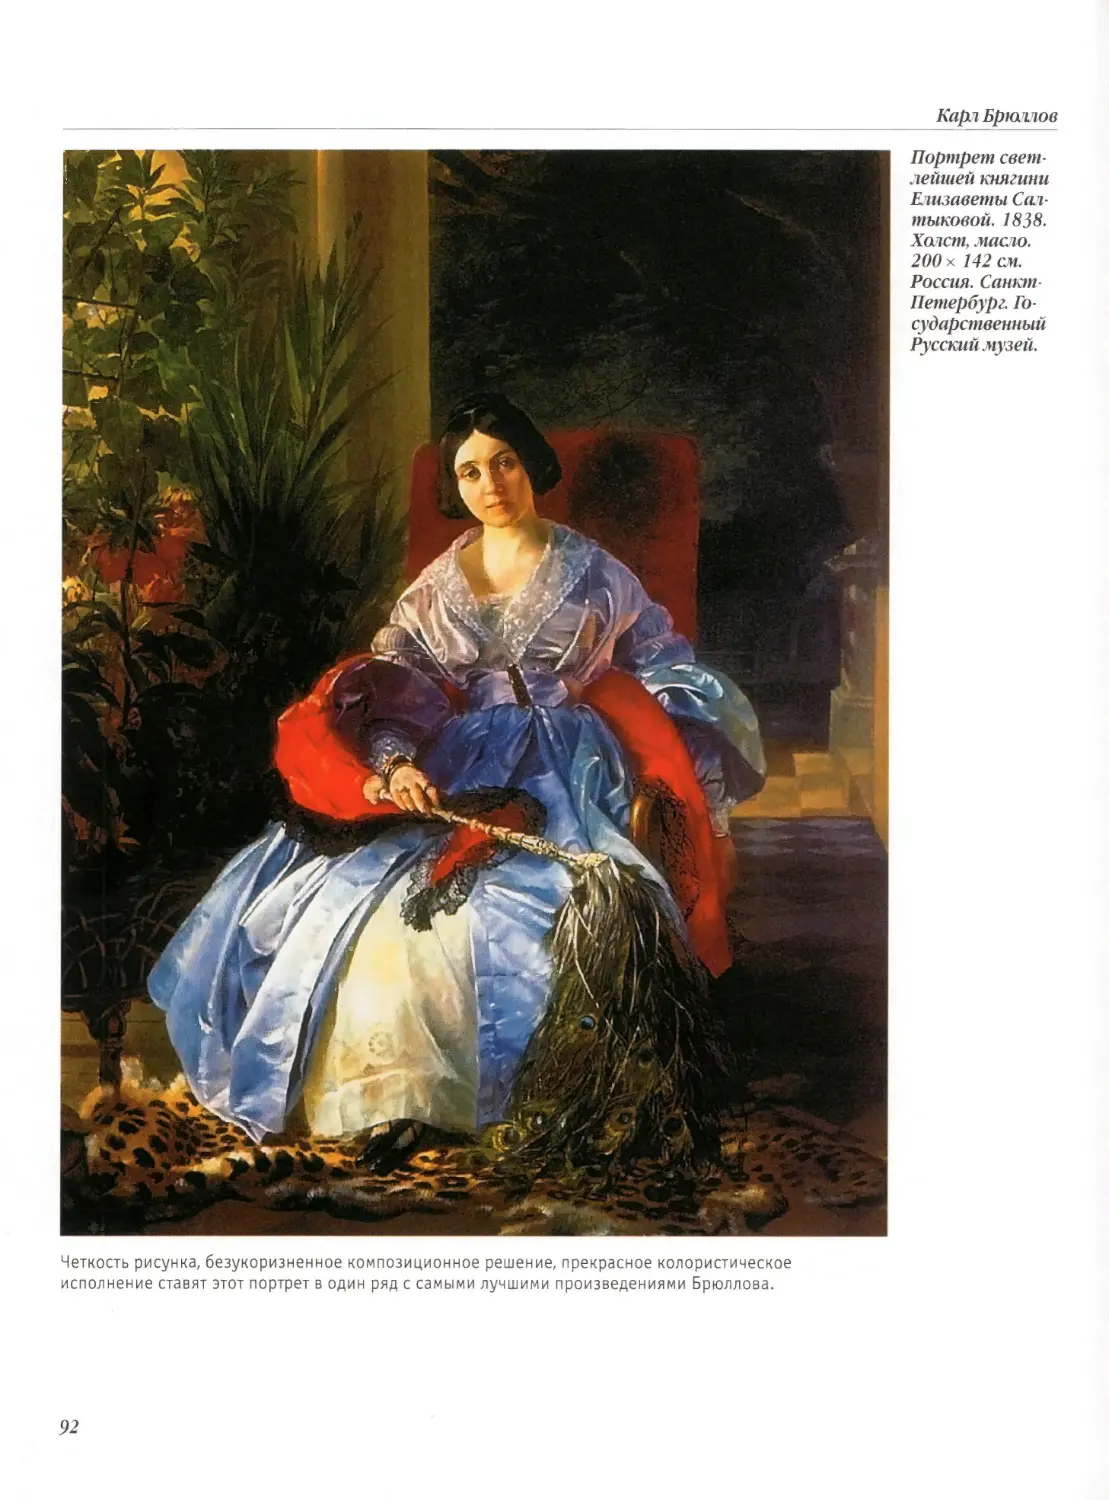 Портрет светлейшей княгини Елизаветы Салтыковой